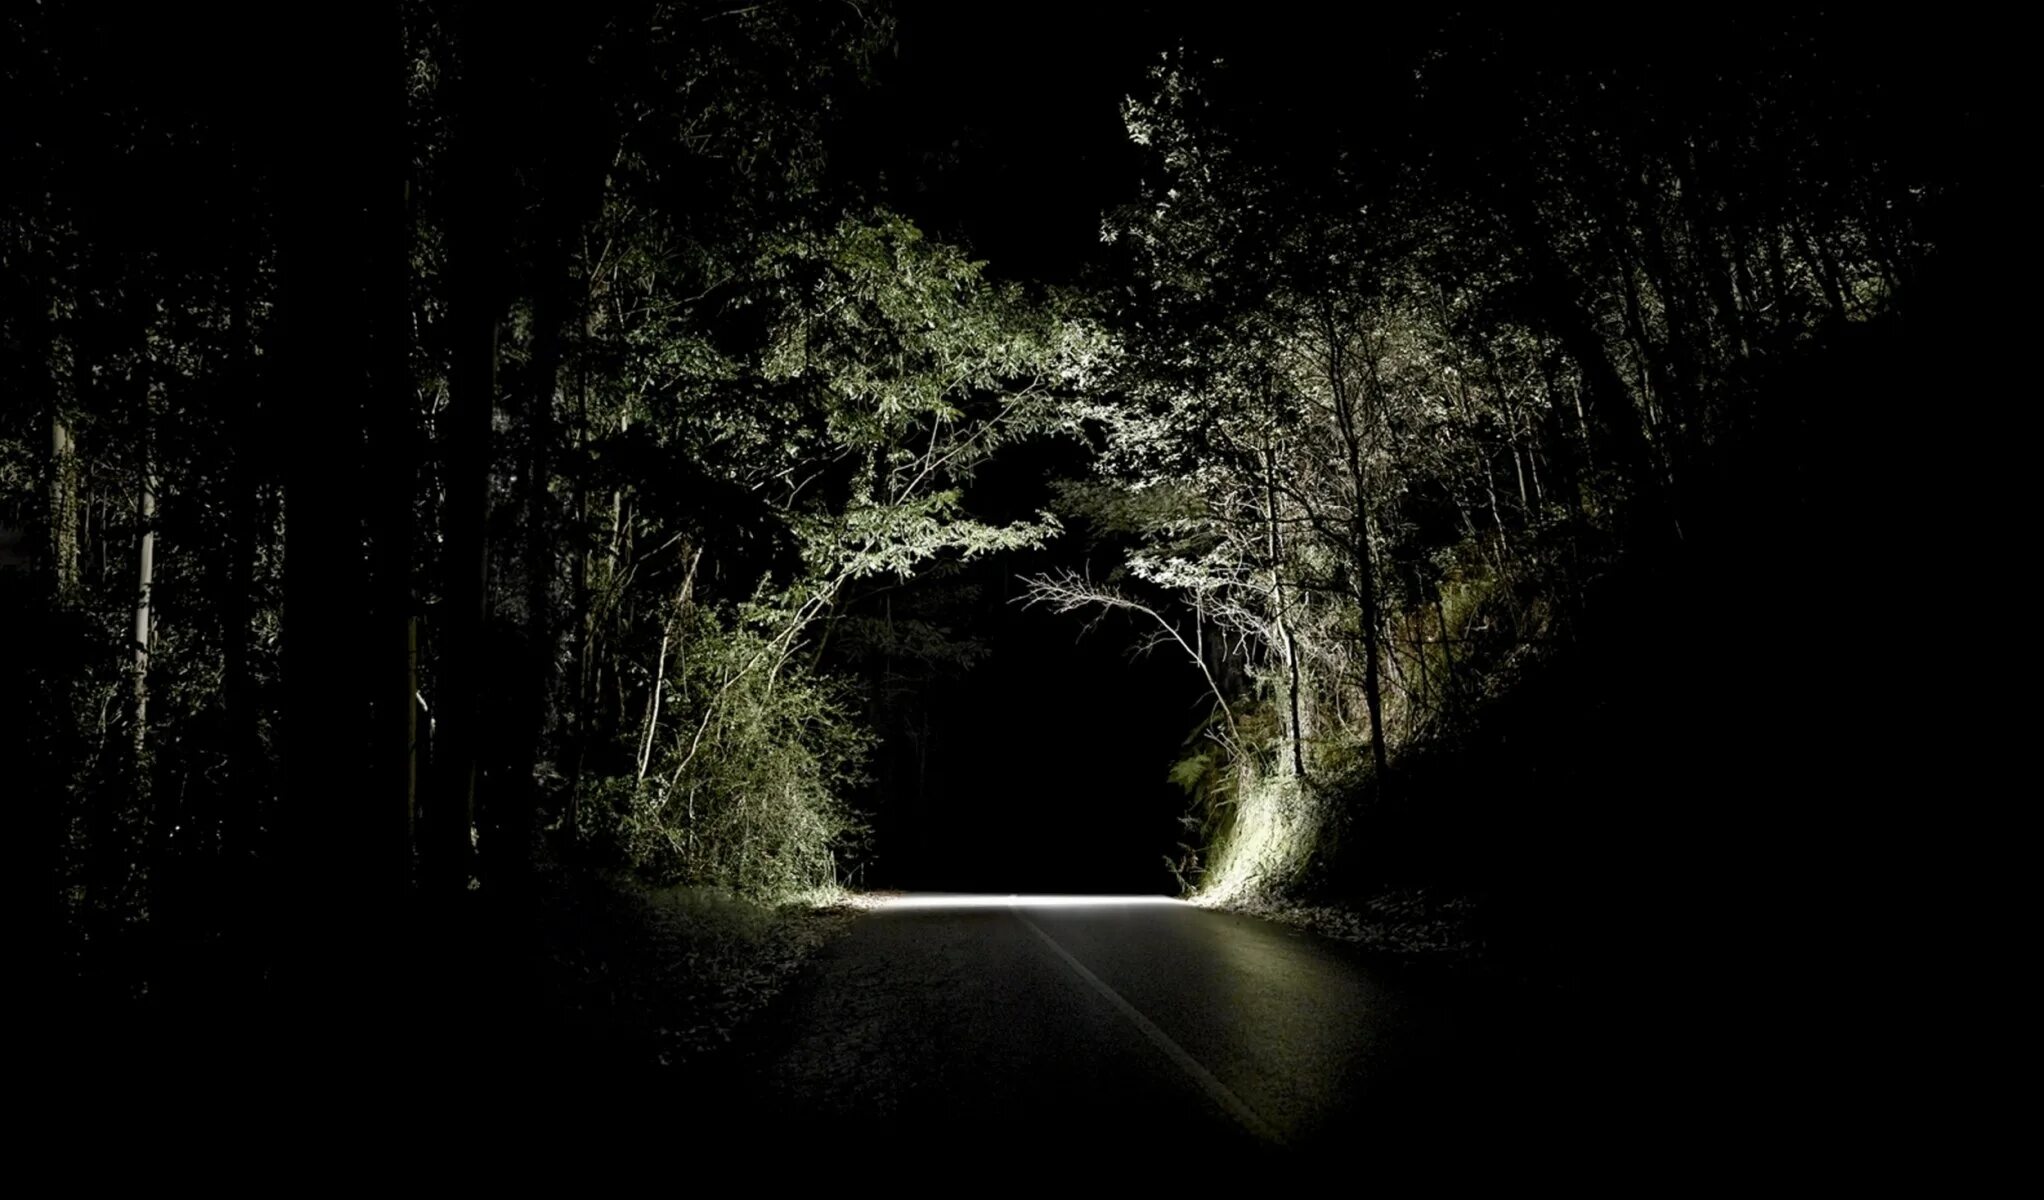 Обои плохого качества. Темная дорога. Дорога в лесу ночью. Ночной лес. Лесная дорога ночью.